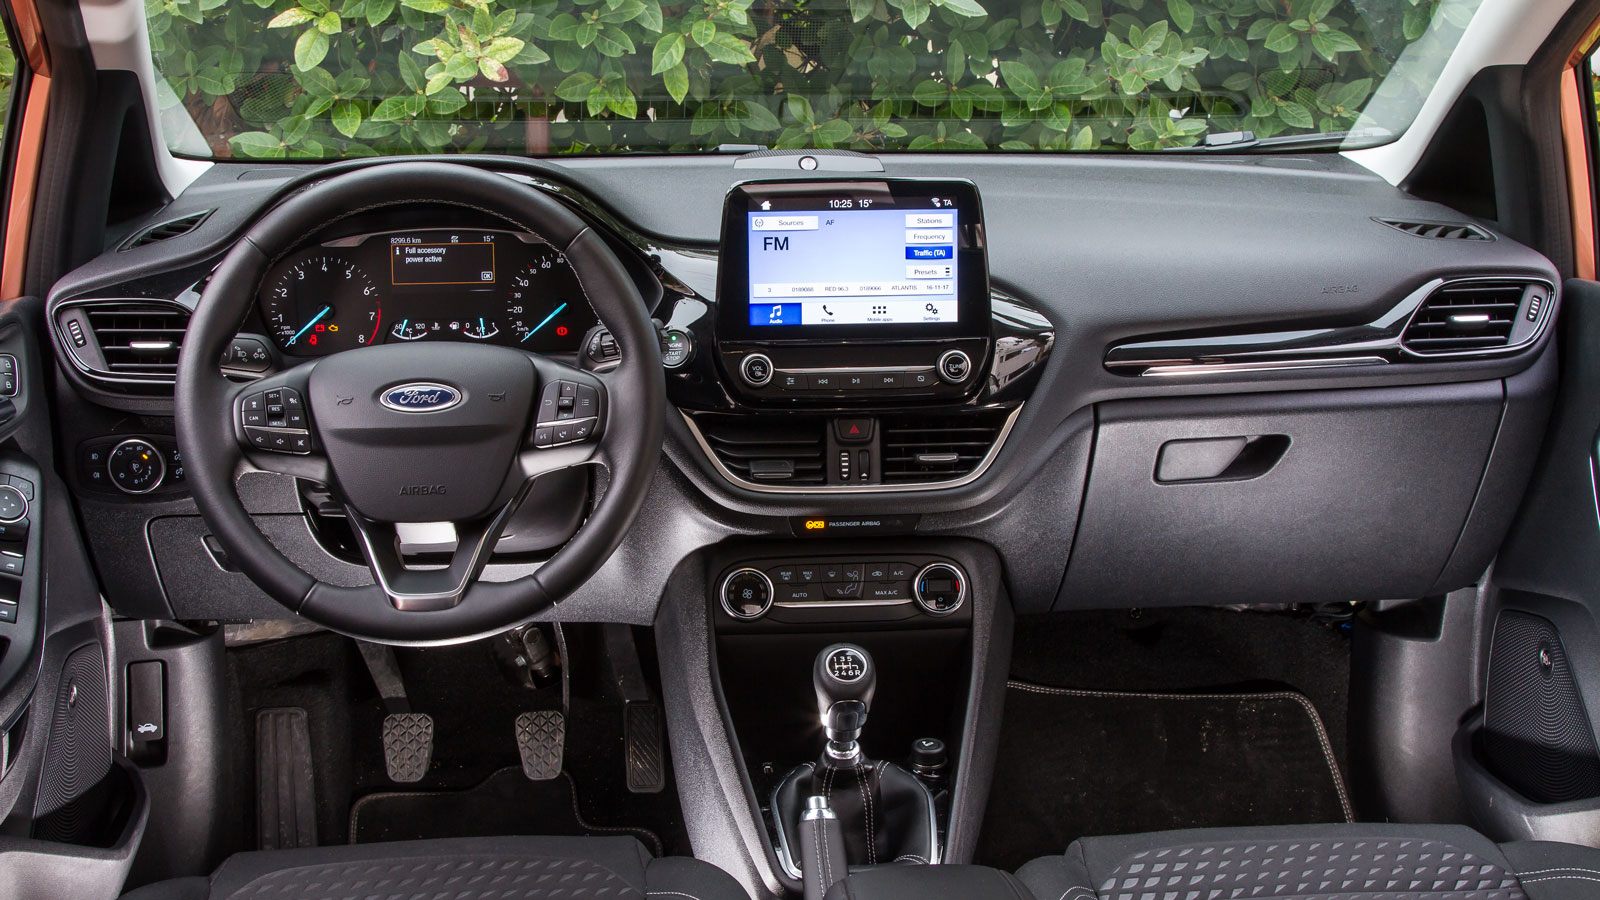 Το Ford Fiesta μπορεί να φιλοξενήσει με άνεση 4 ενήλικες, αποτέλεσμα της αύξησης των διαστάσεων και του μεταξονίου του μοντέλου